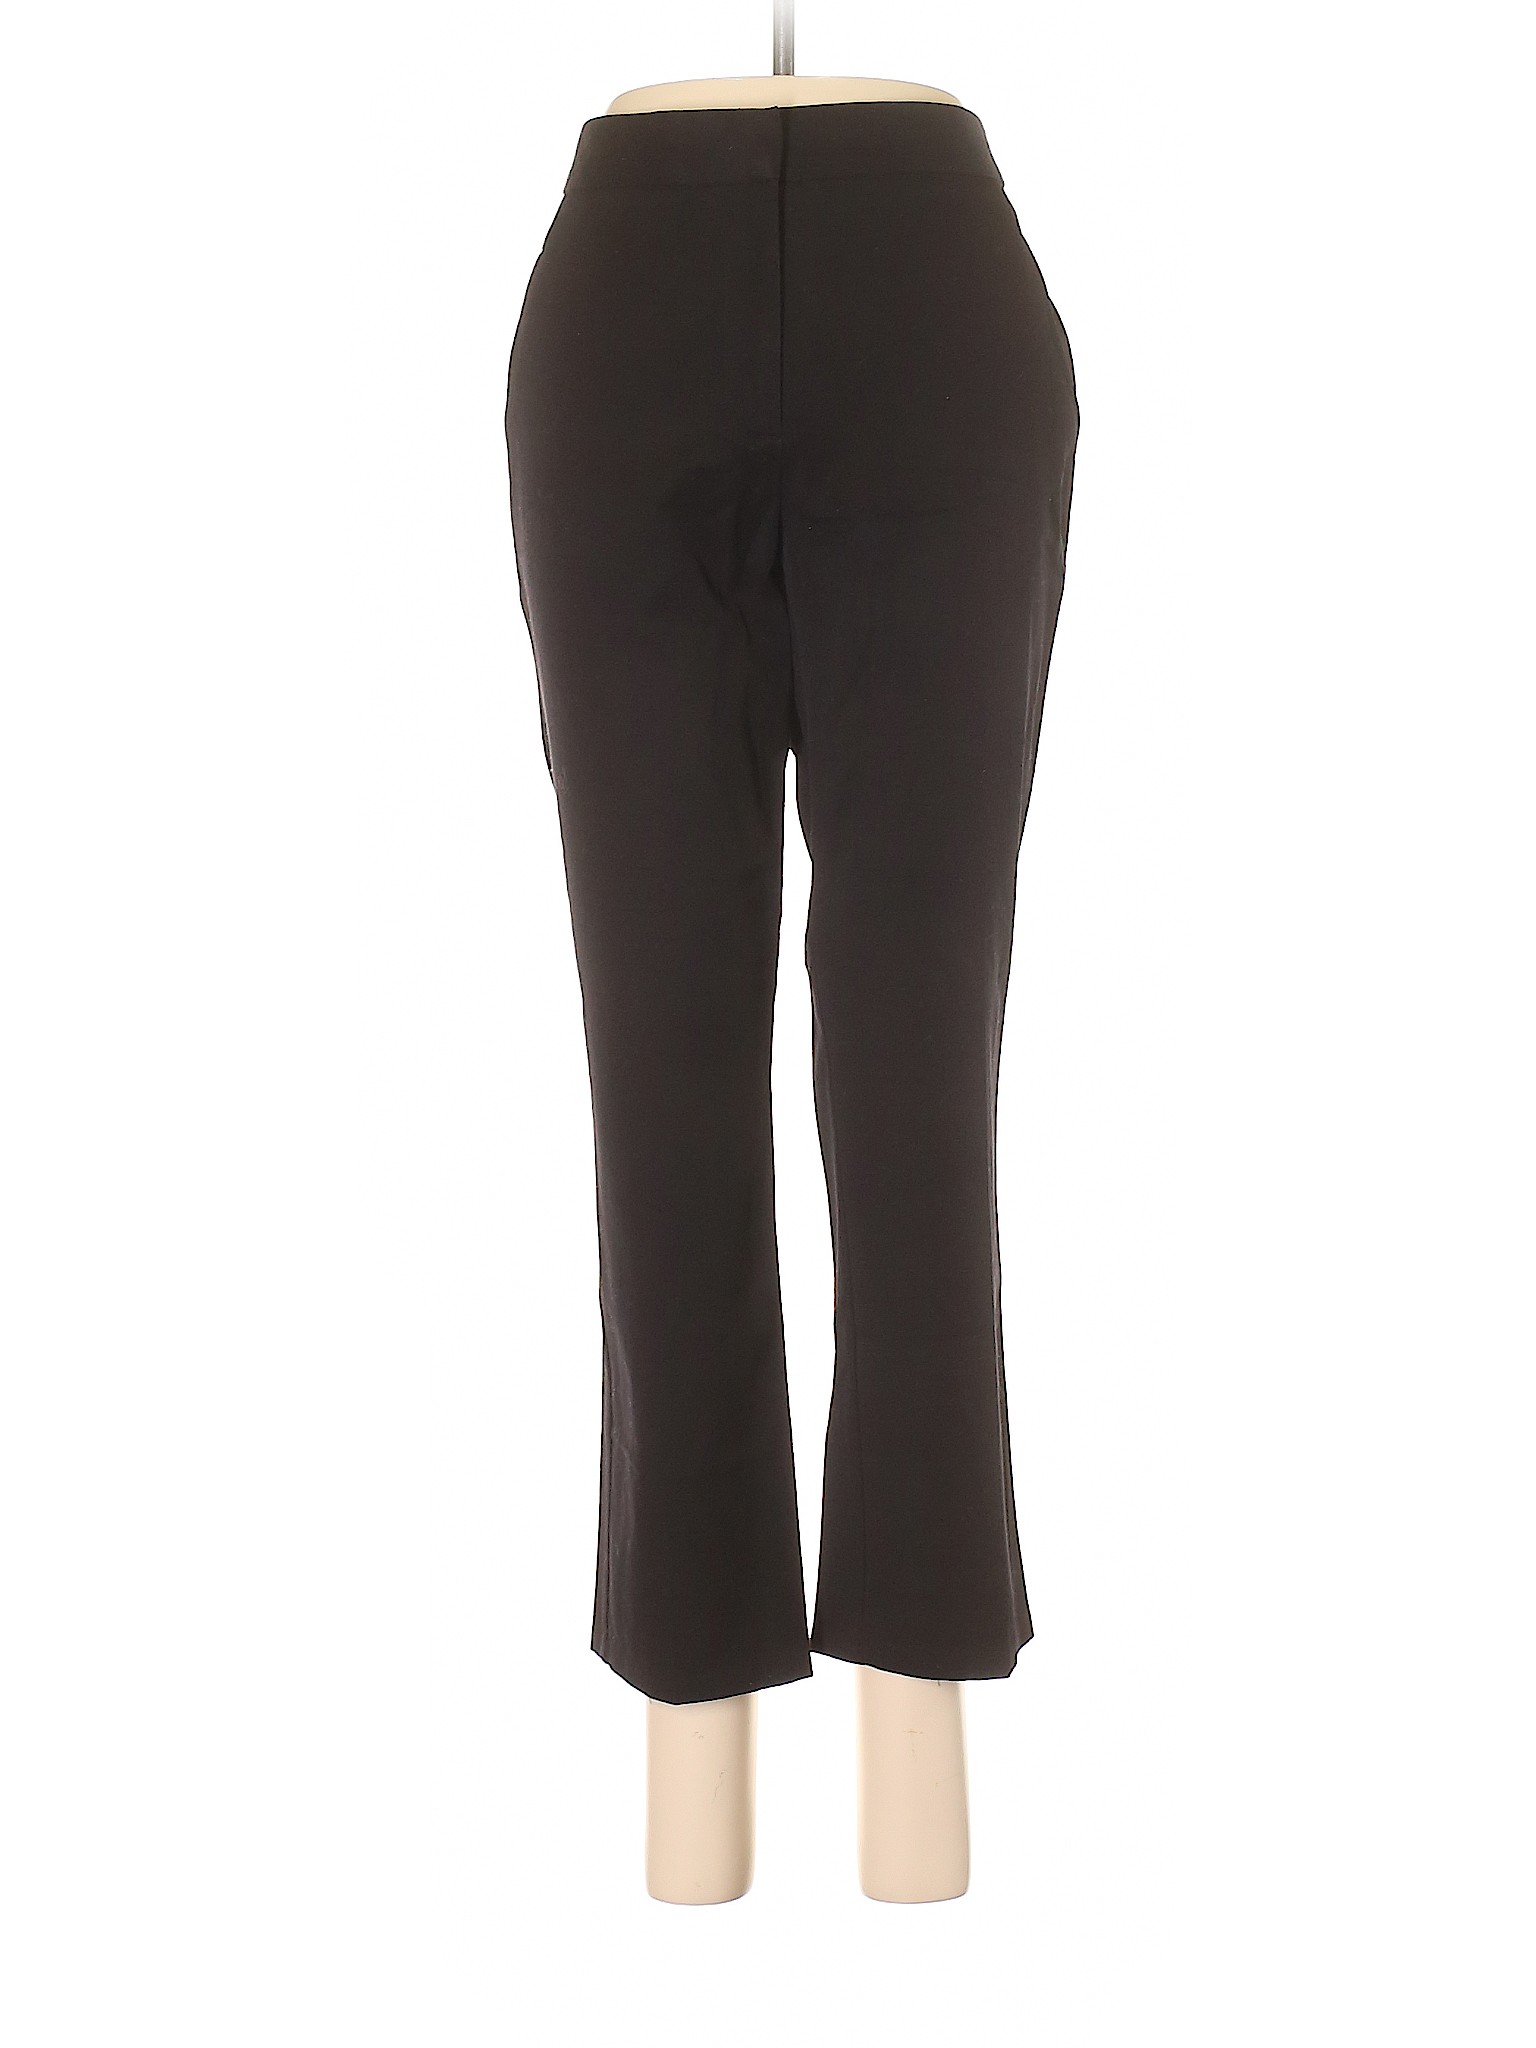 Jules & Leopold Solid Black Dress Pants Size 10 - 95% off | thredUP